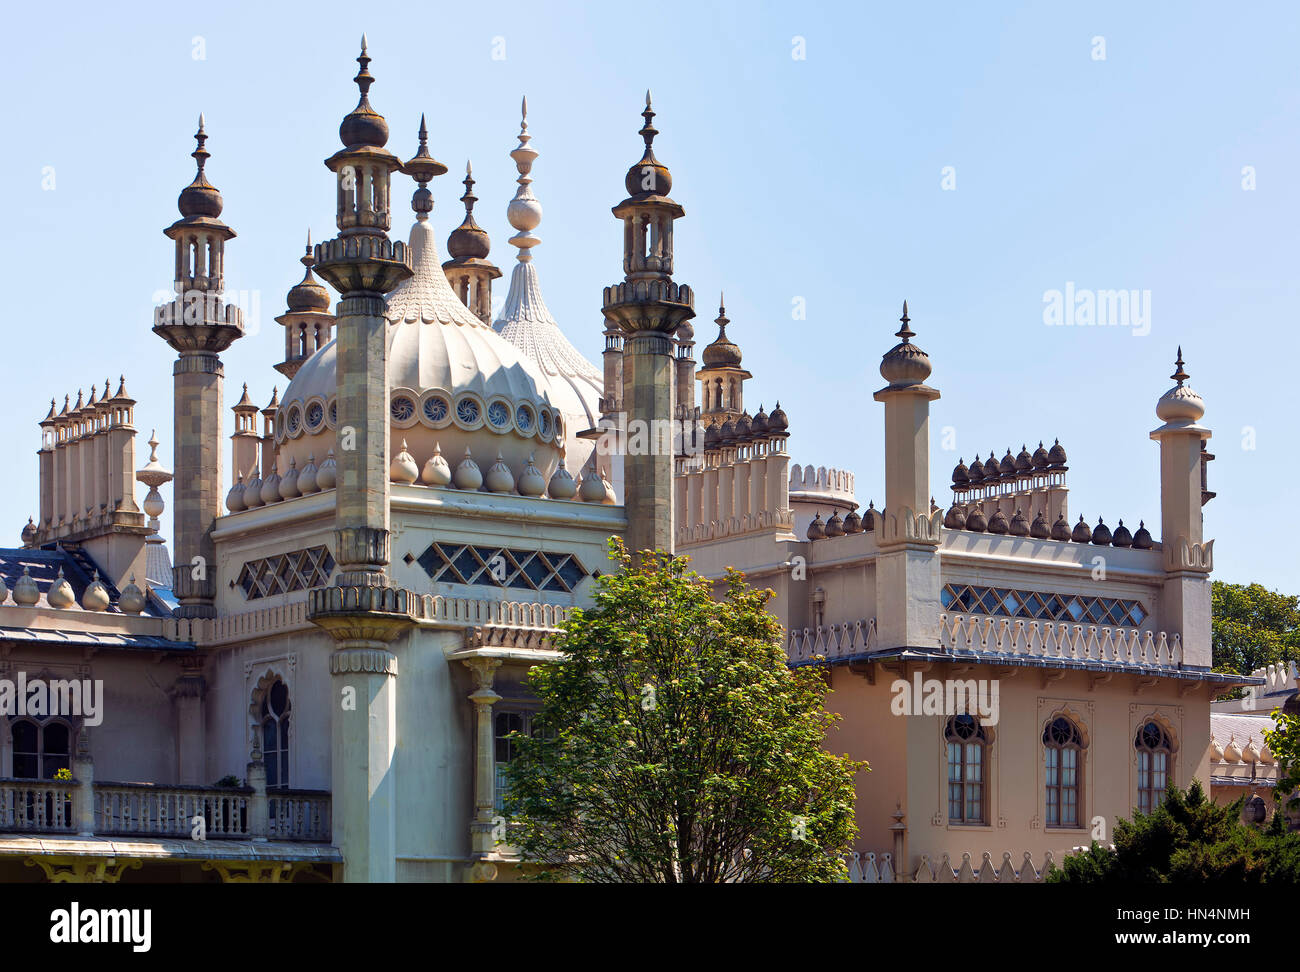 Brighton, East Sussex, UK - 16. Mai 2014: Kuppeln und Türme der Royal Pavilion in Brighton. Designer John Nash erstellt die Indo-sarazenischen Stil Pala Stockfoto